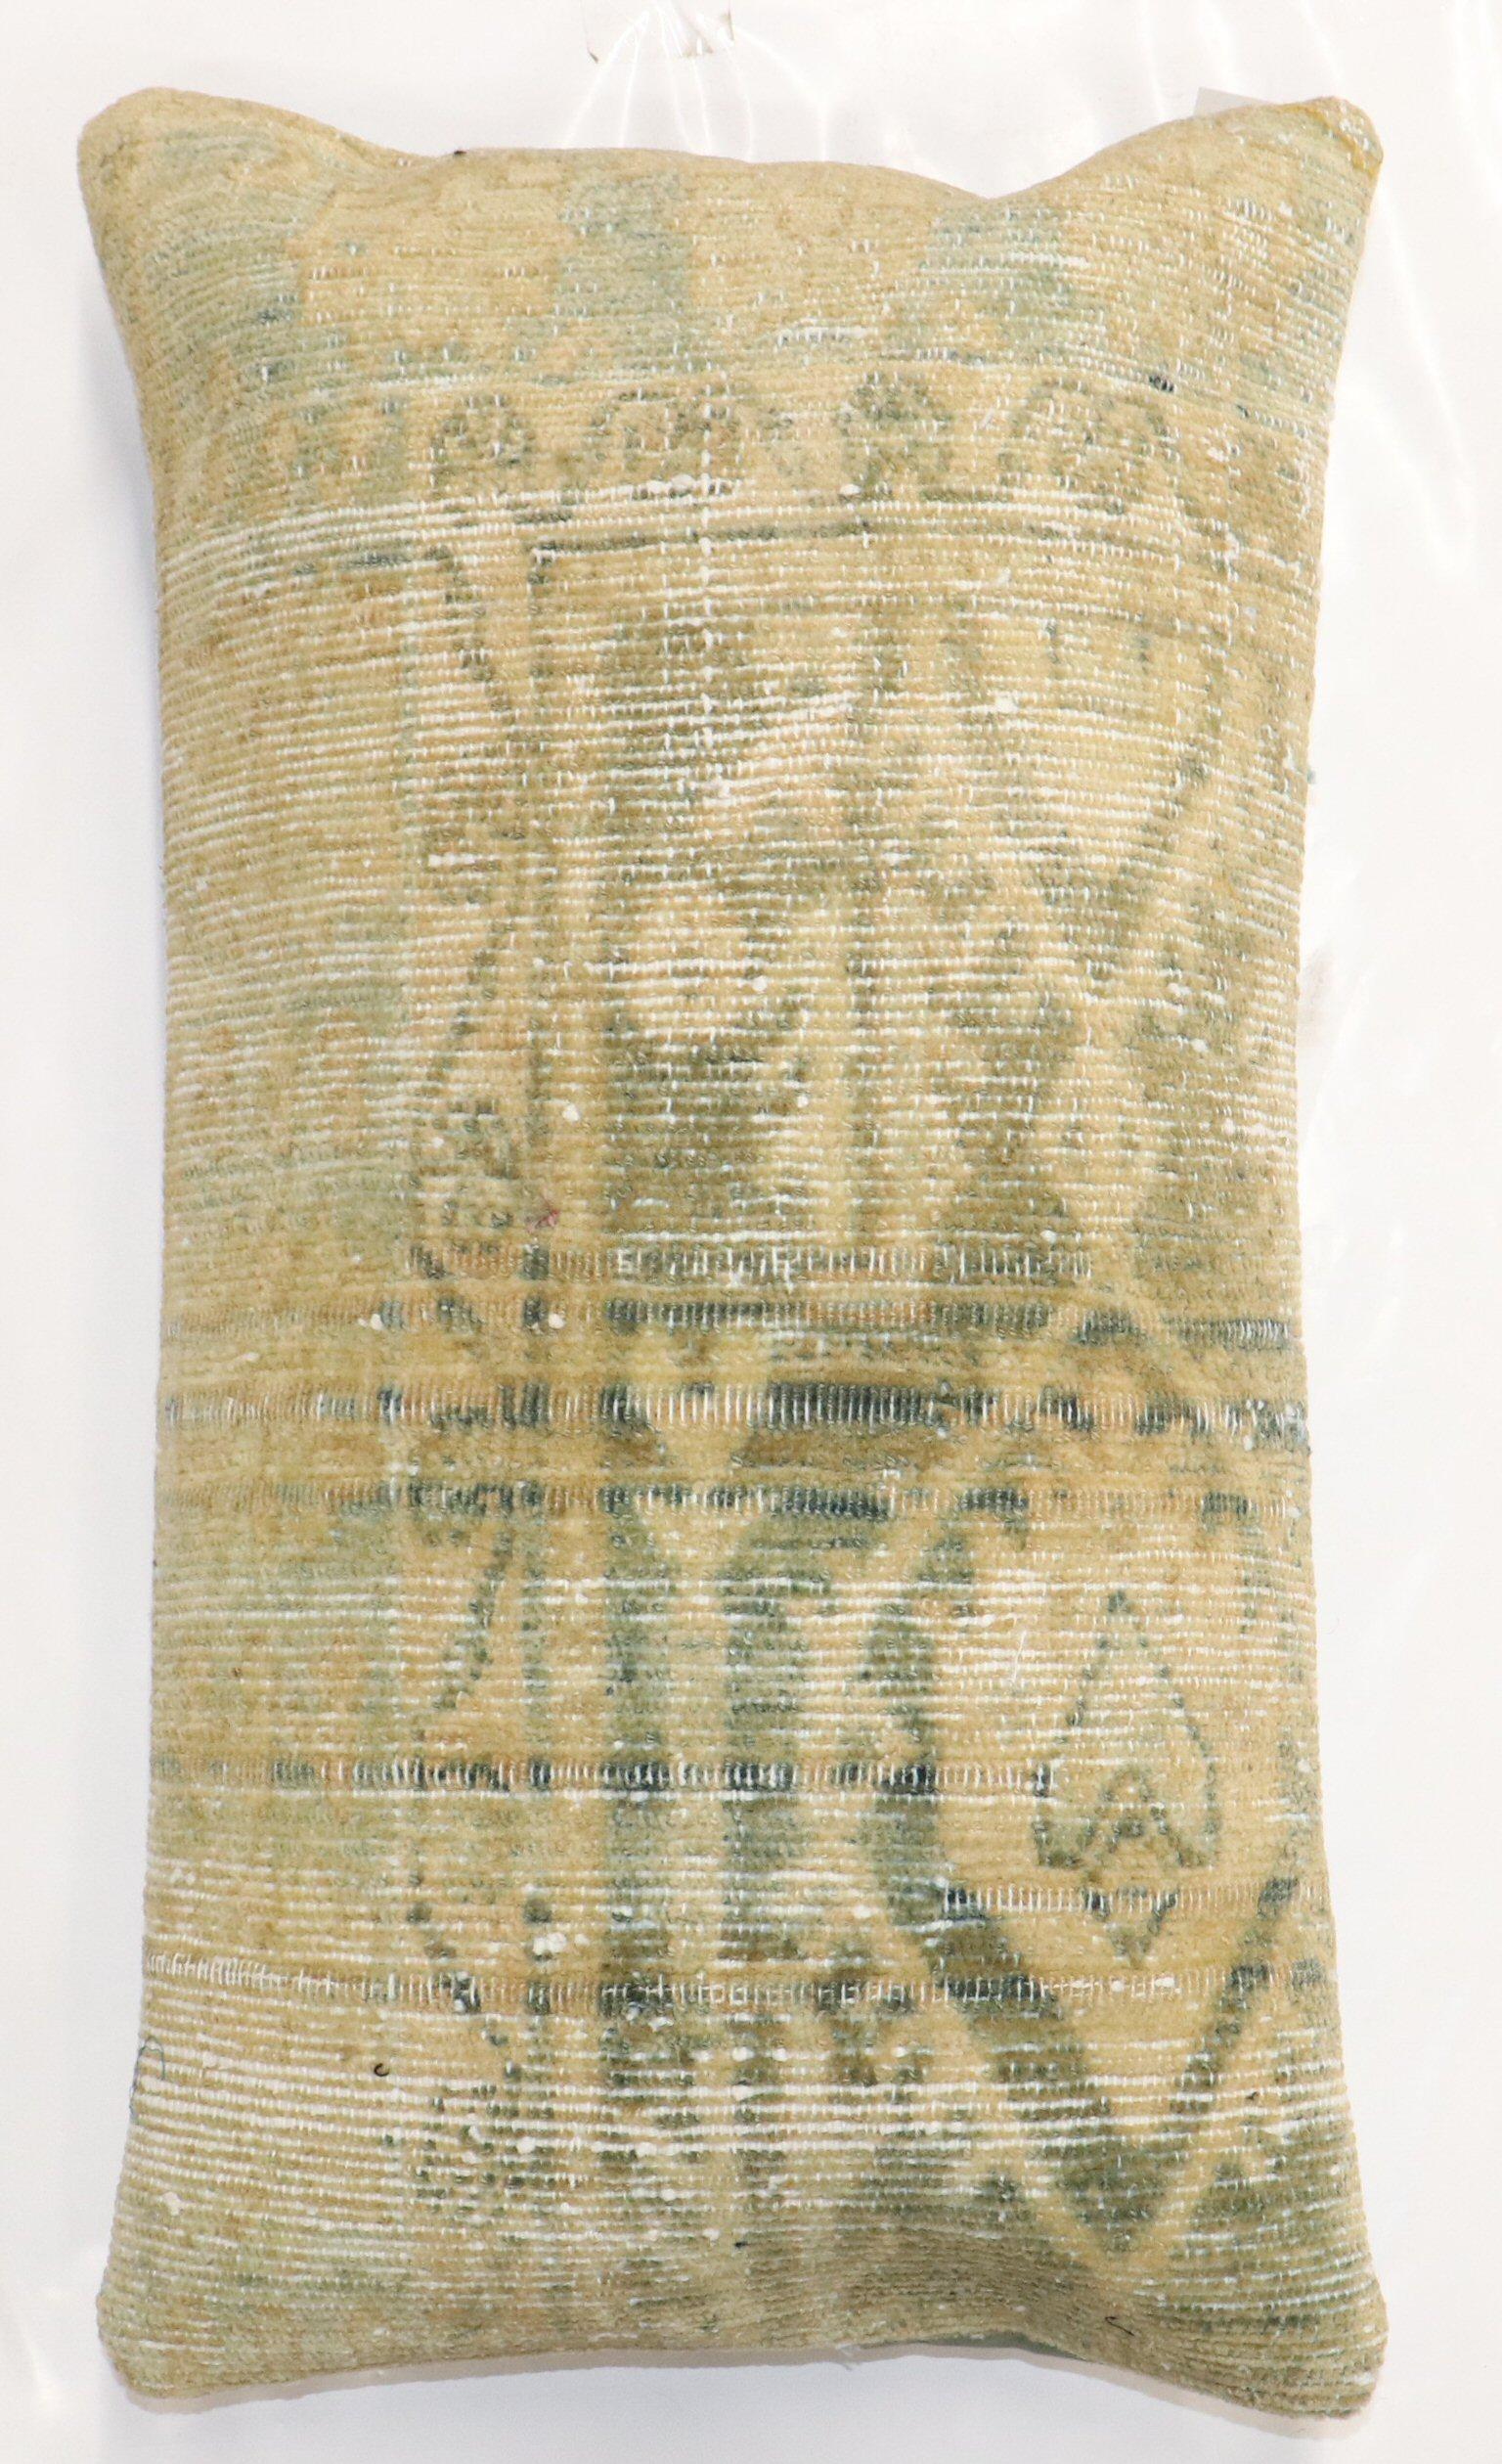 Kissen aus einem antiken persischen Malayer-Teppich in blassem Grün

Maße: 16'' x 28''.